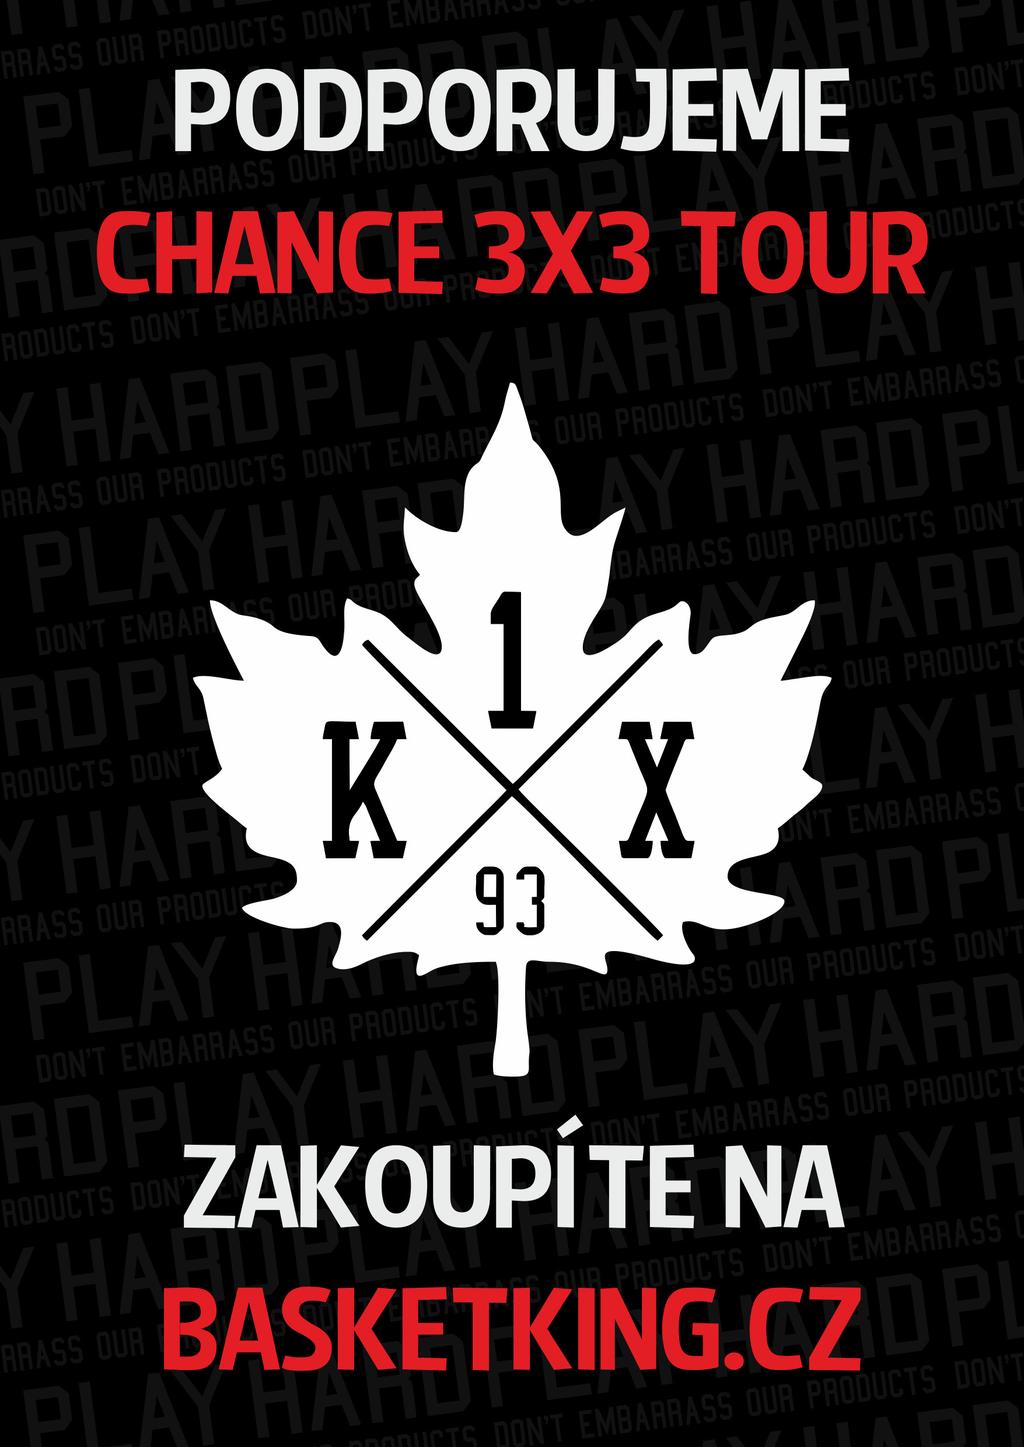 Chance 3x3 Tour 2014 PROGRAM Uvnitř programu Kalendář Chance 3x3 Tour Co je basketbal